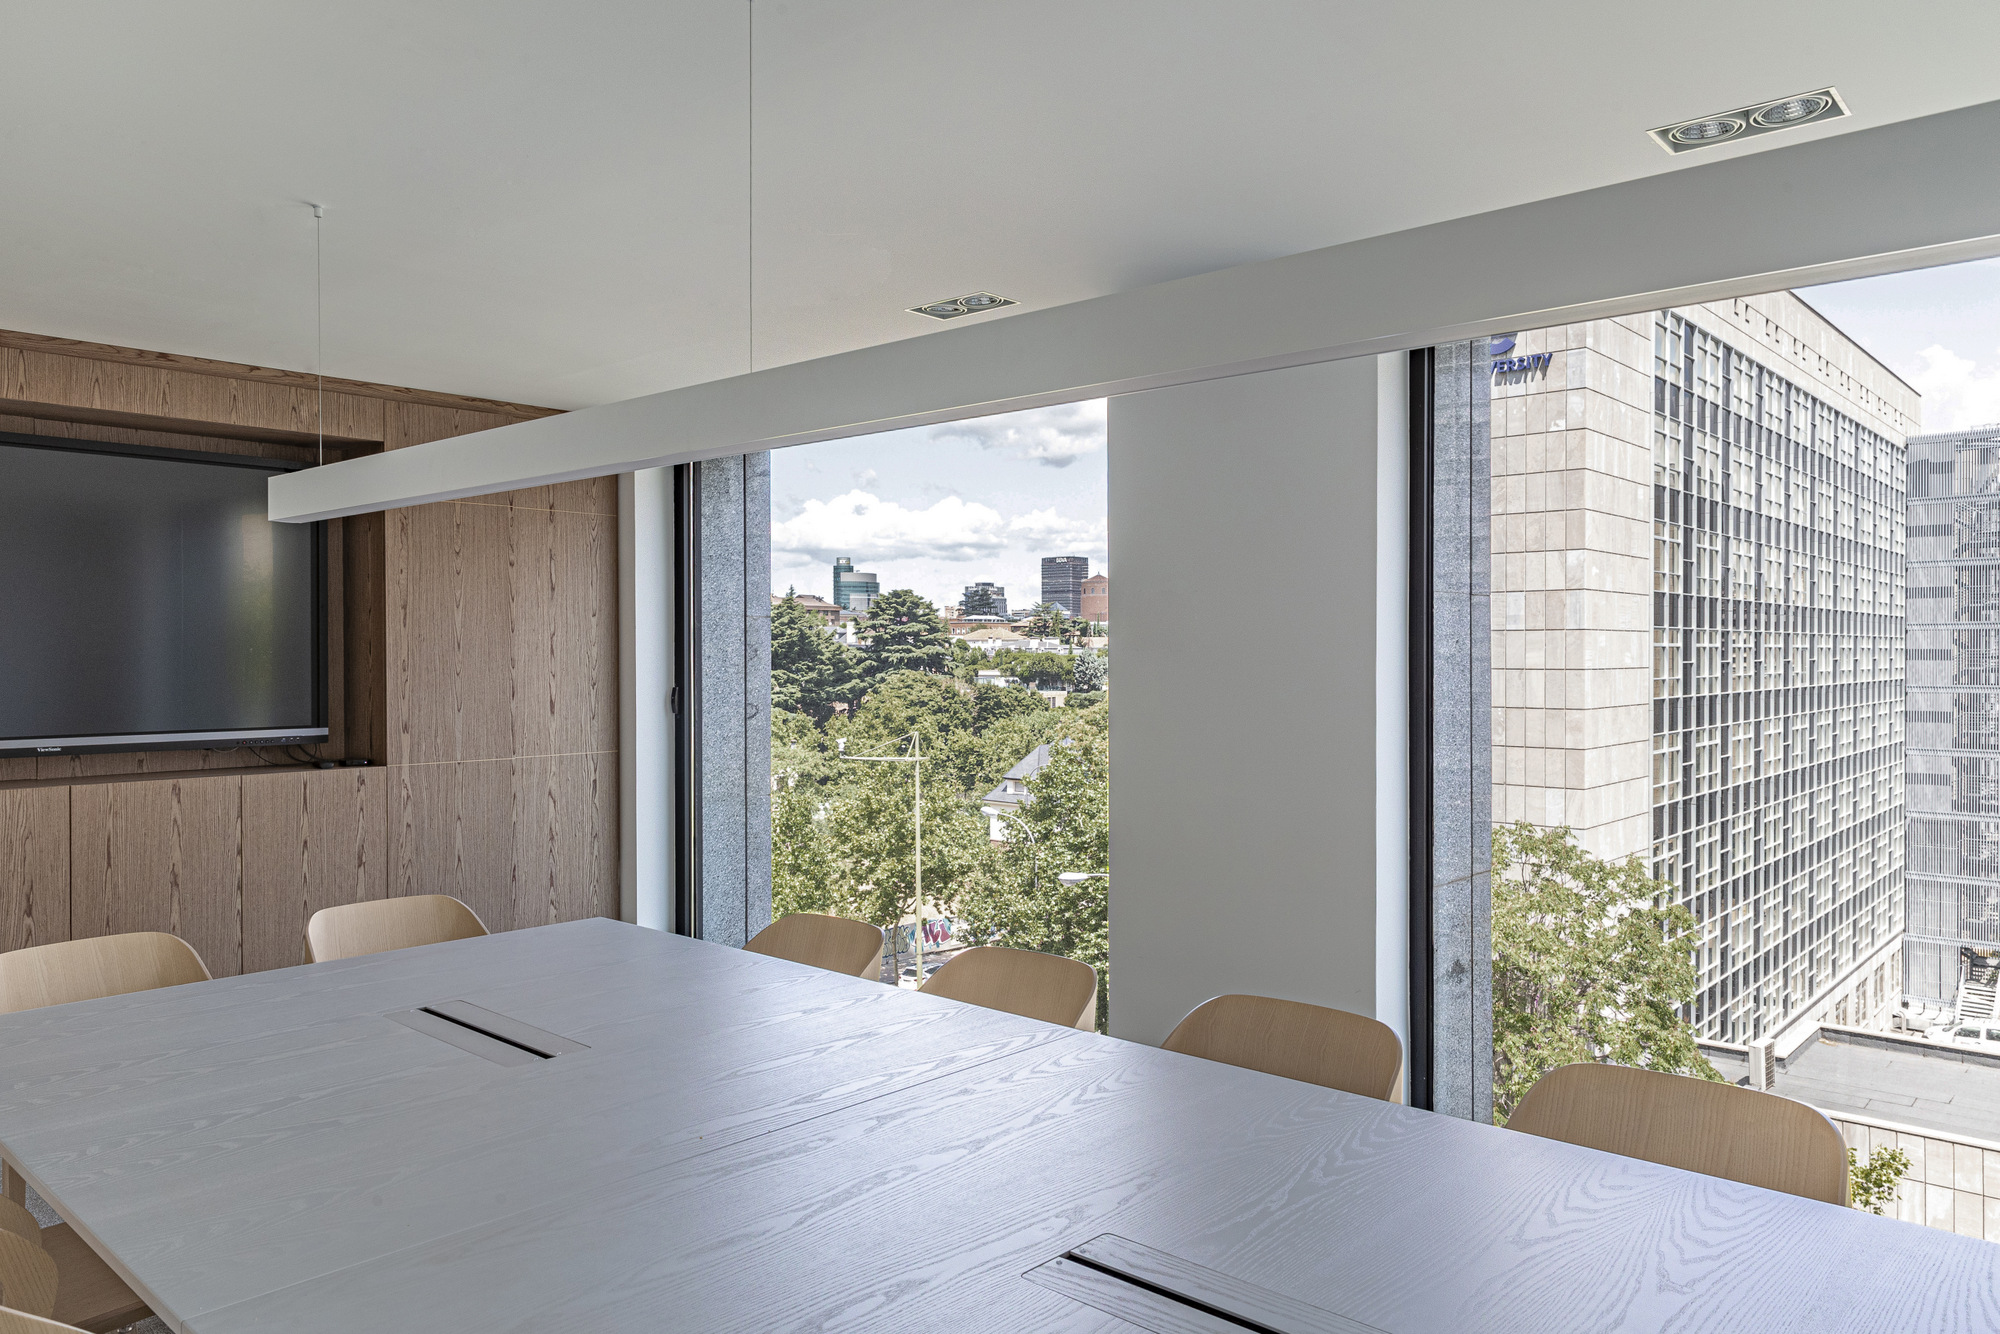 图片[7]|Oquendo首都办事处-马德里|ART-Arrakis | 建筑室内设计的创新与灵感